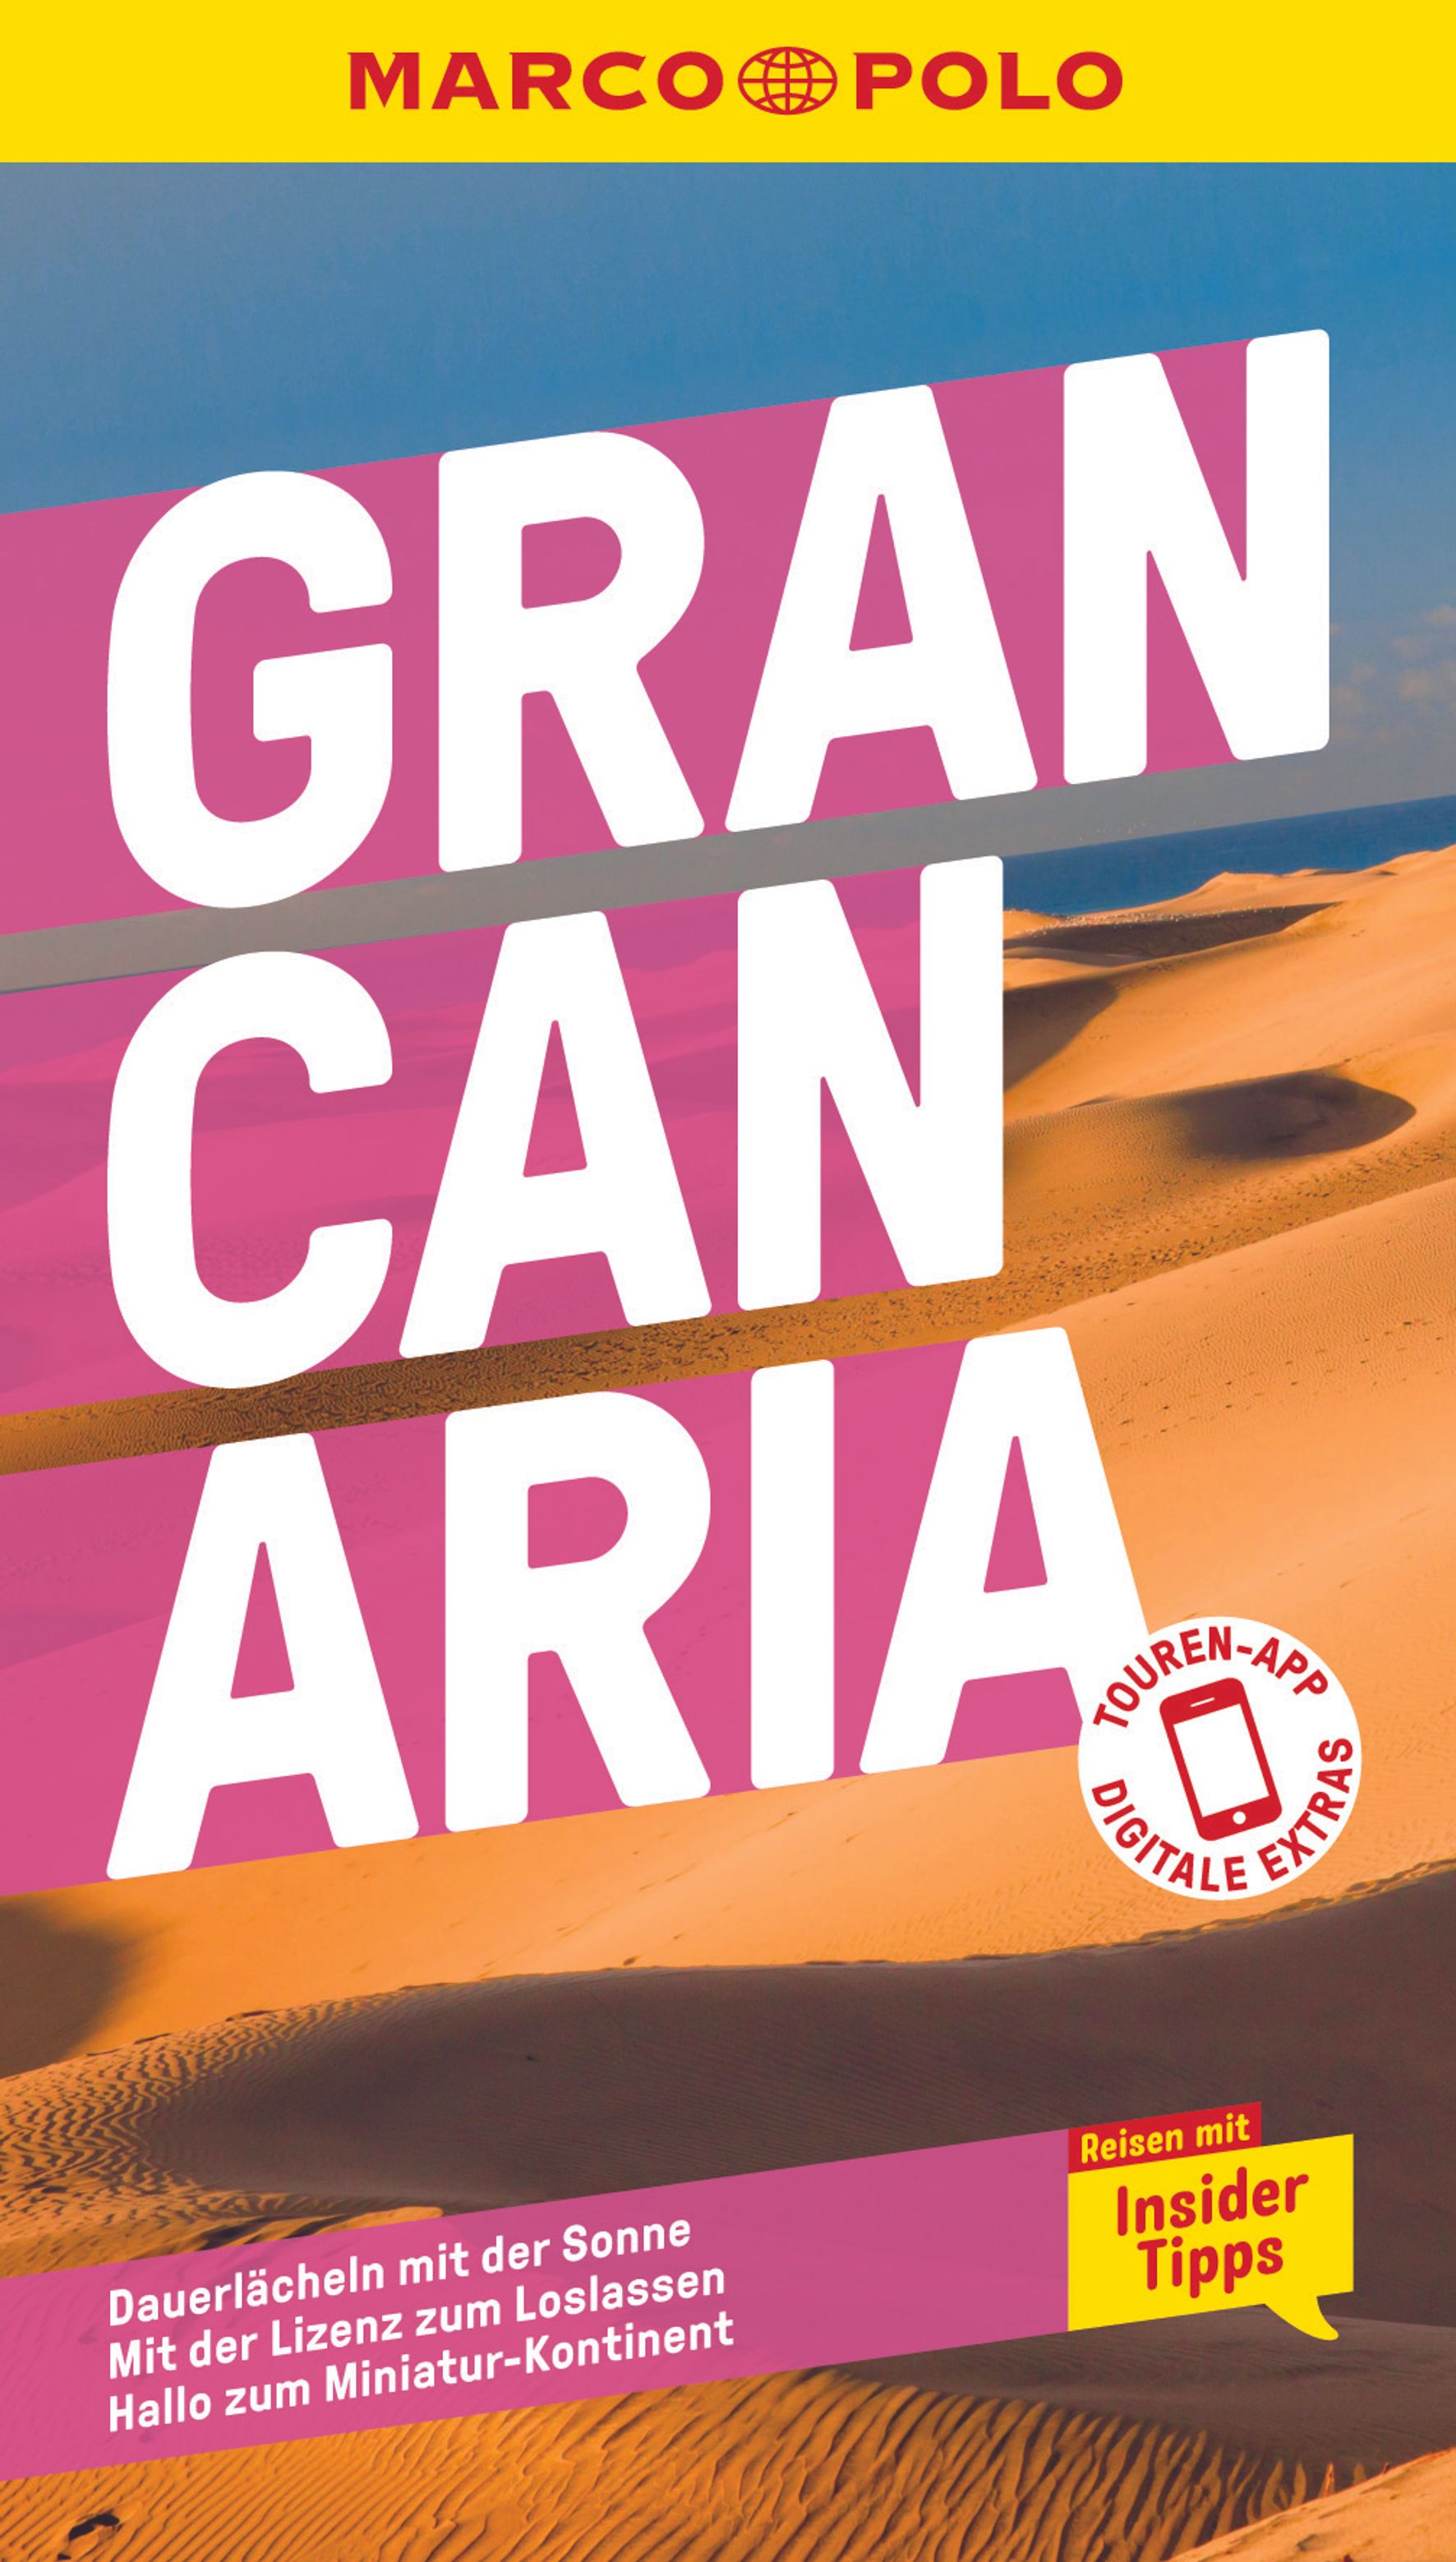 MAIRDUMONT Gran Canaria (eBook)